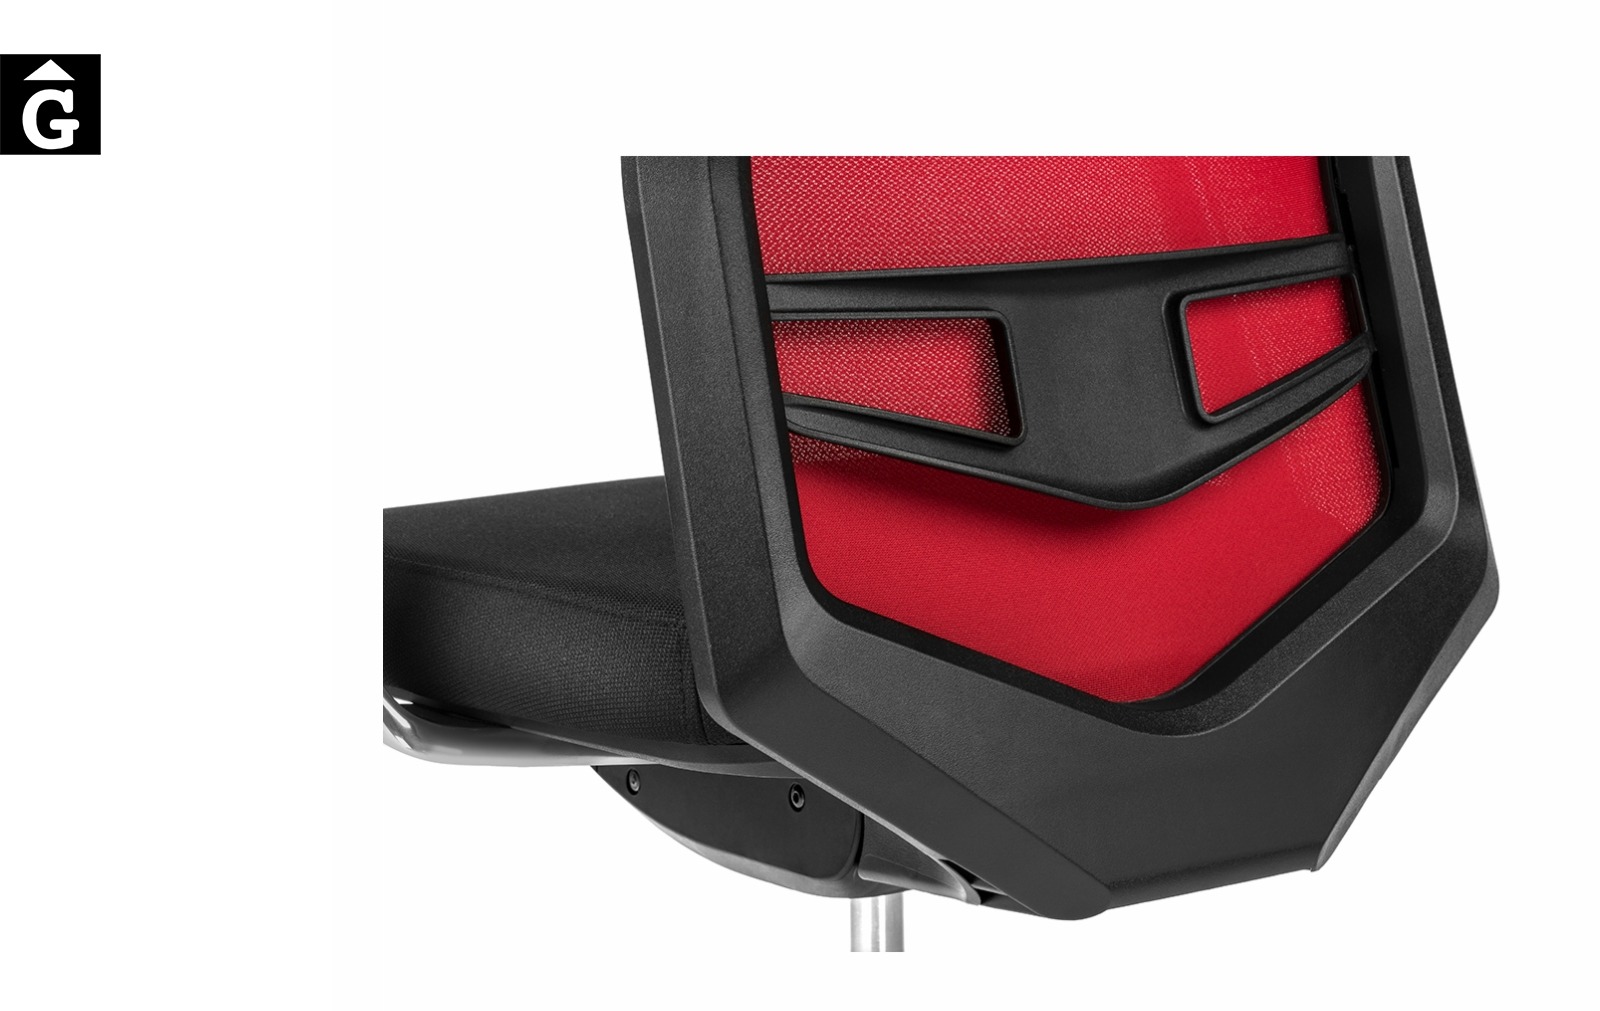 Cadira oficina Equis crom i vermella | Detall respatller | Dile | mobiliari d’oficina molt interessant | mobles Gifreu | botiga | Contract | Mobles nous oficina